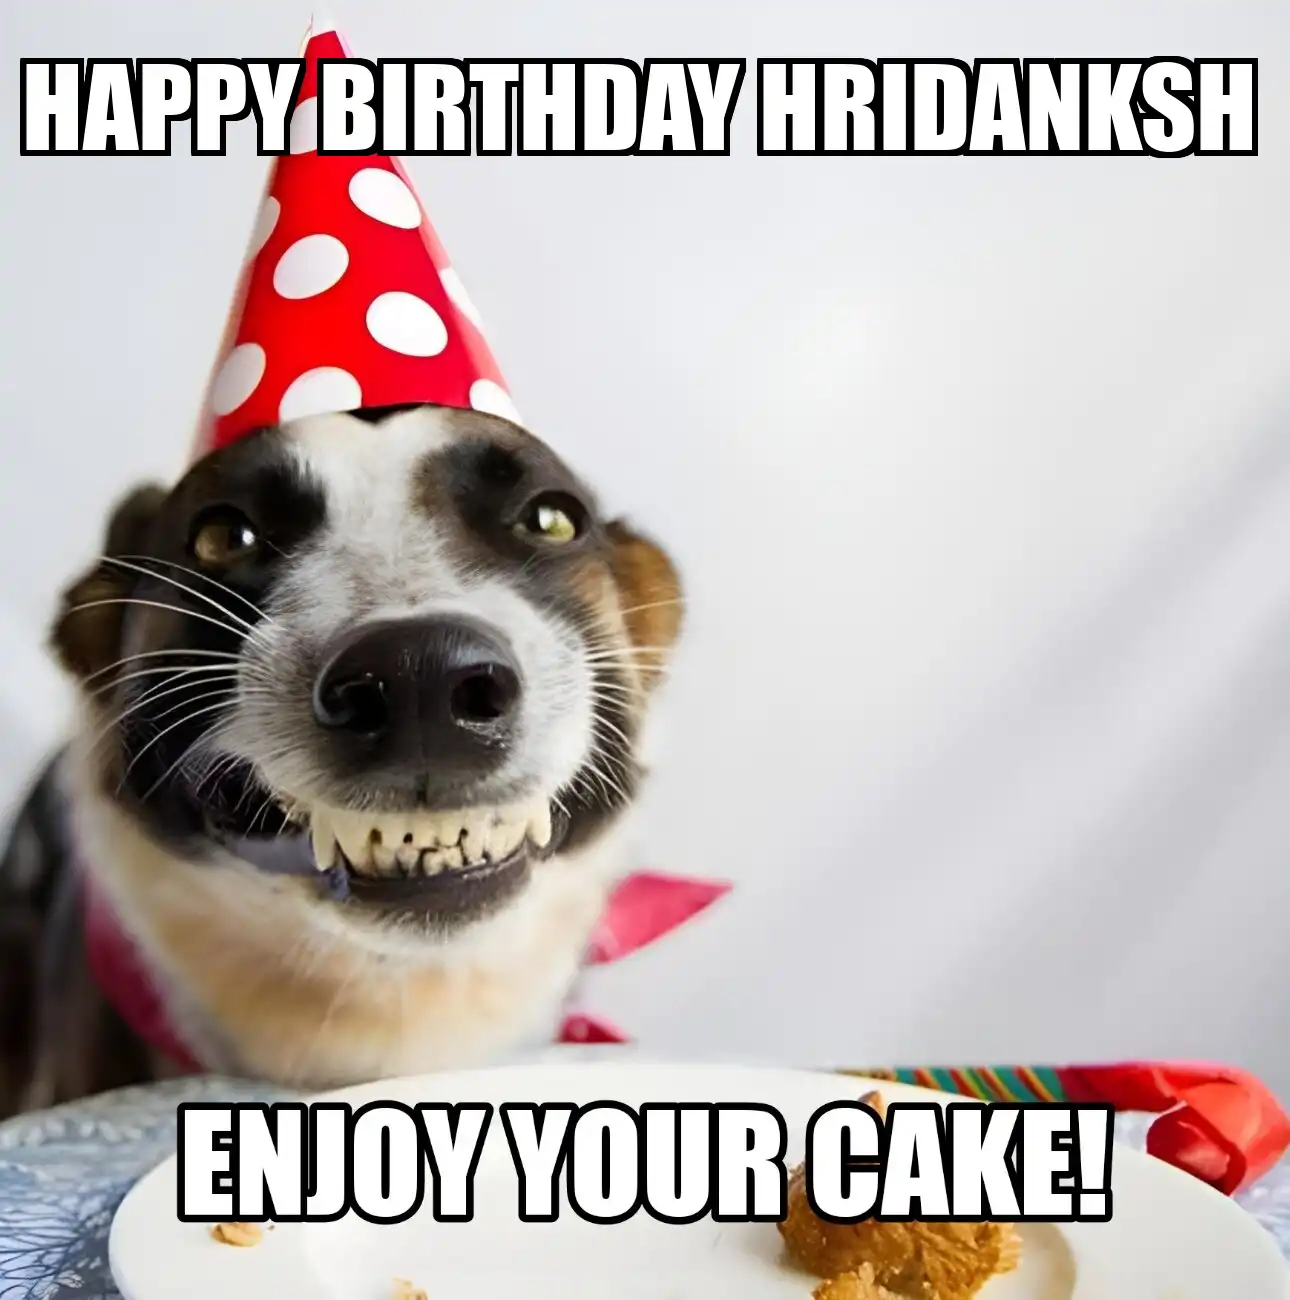 Happy Birthday Hridanksh Enjoy Your Cake Dog Meme